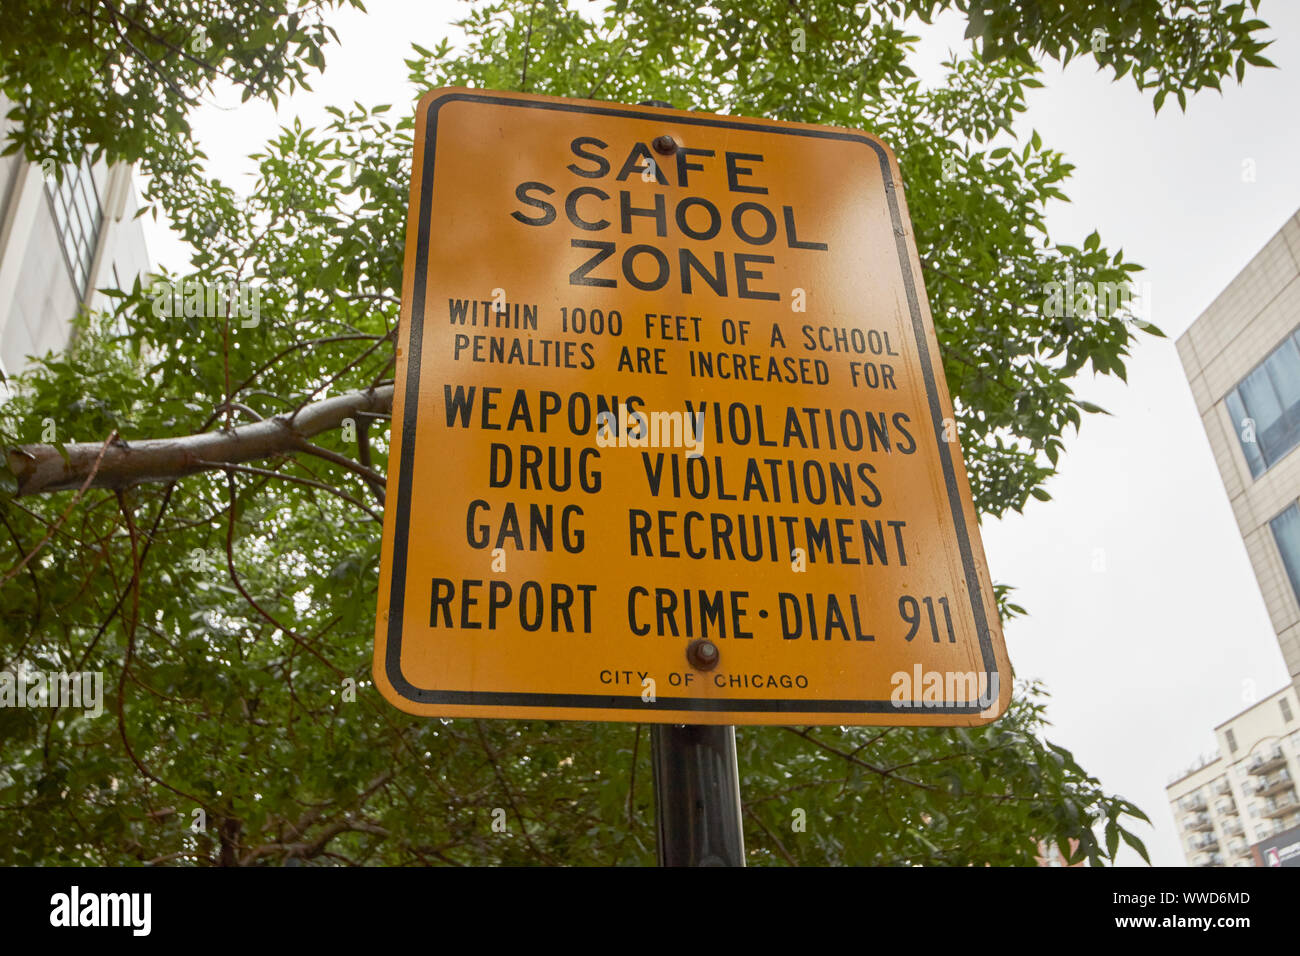 Zone de sécurité à l'école d'avertissement signe plus sévères pour certains crimes dans un secteur de l'école Chicago Illinois USA Banque D'Images